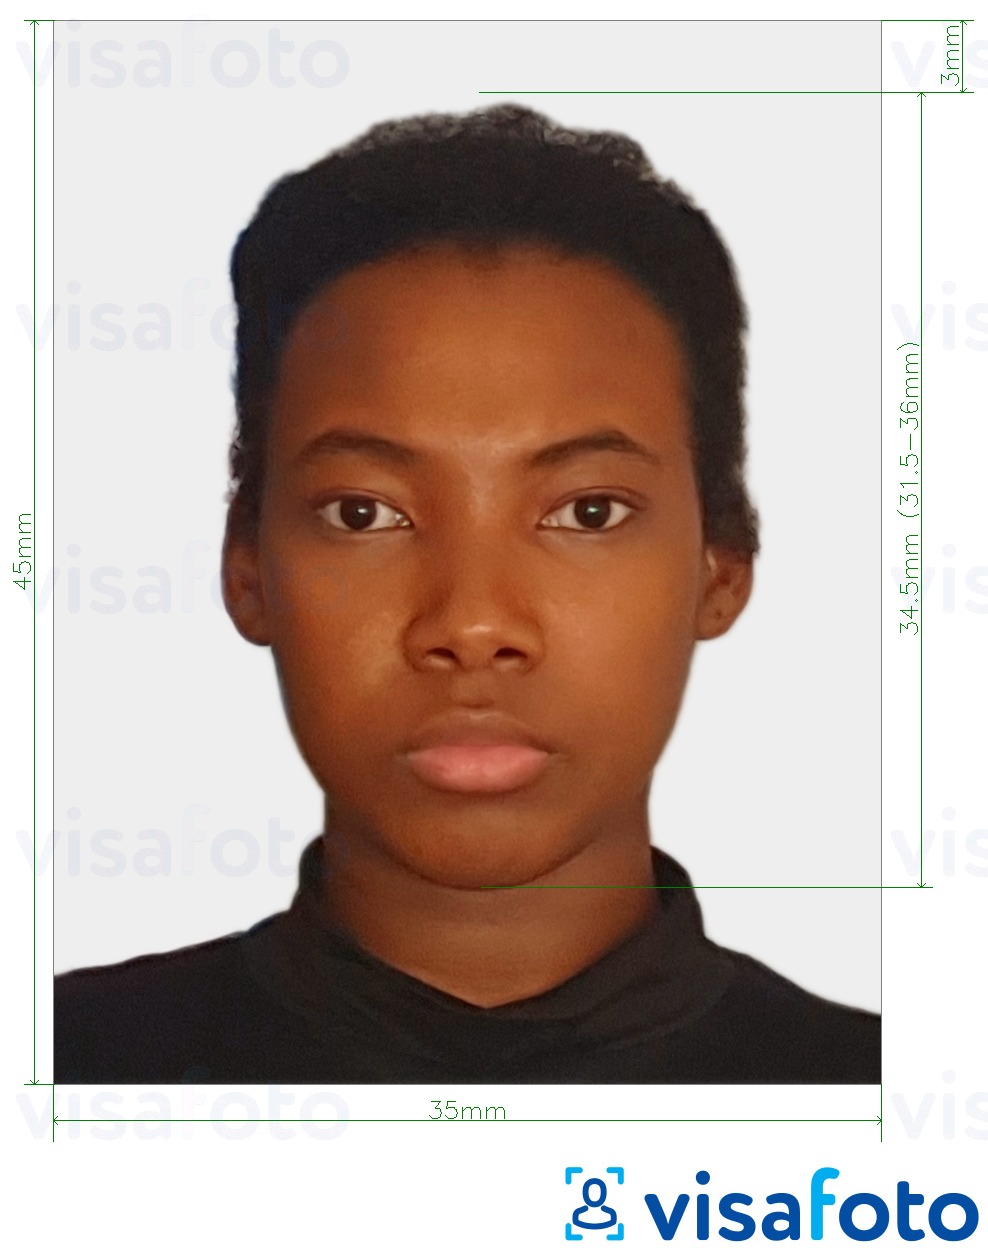 Contoh foto untuk Gabon evisa foto 35x45 mm (3.5x4.5 cm) dengan spesifikasi saiz yang tepat.